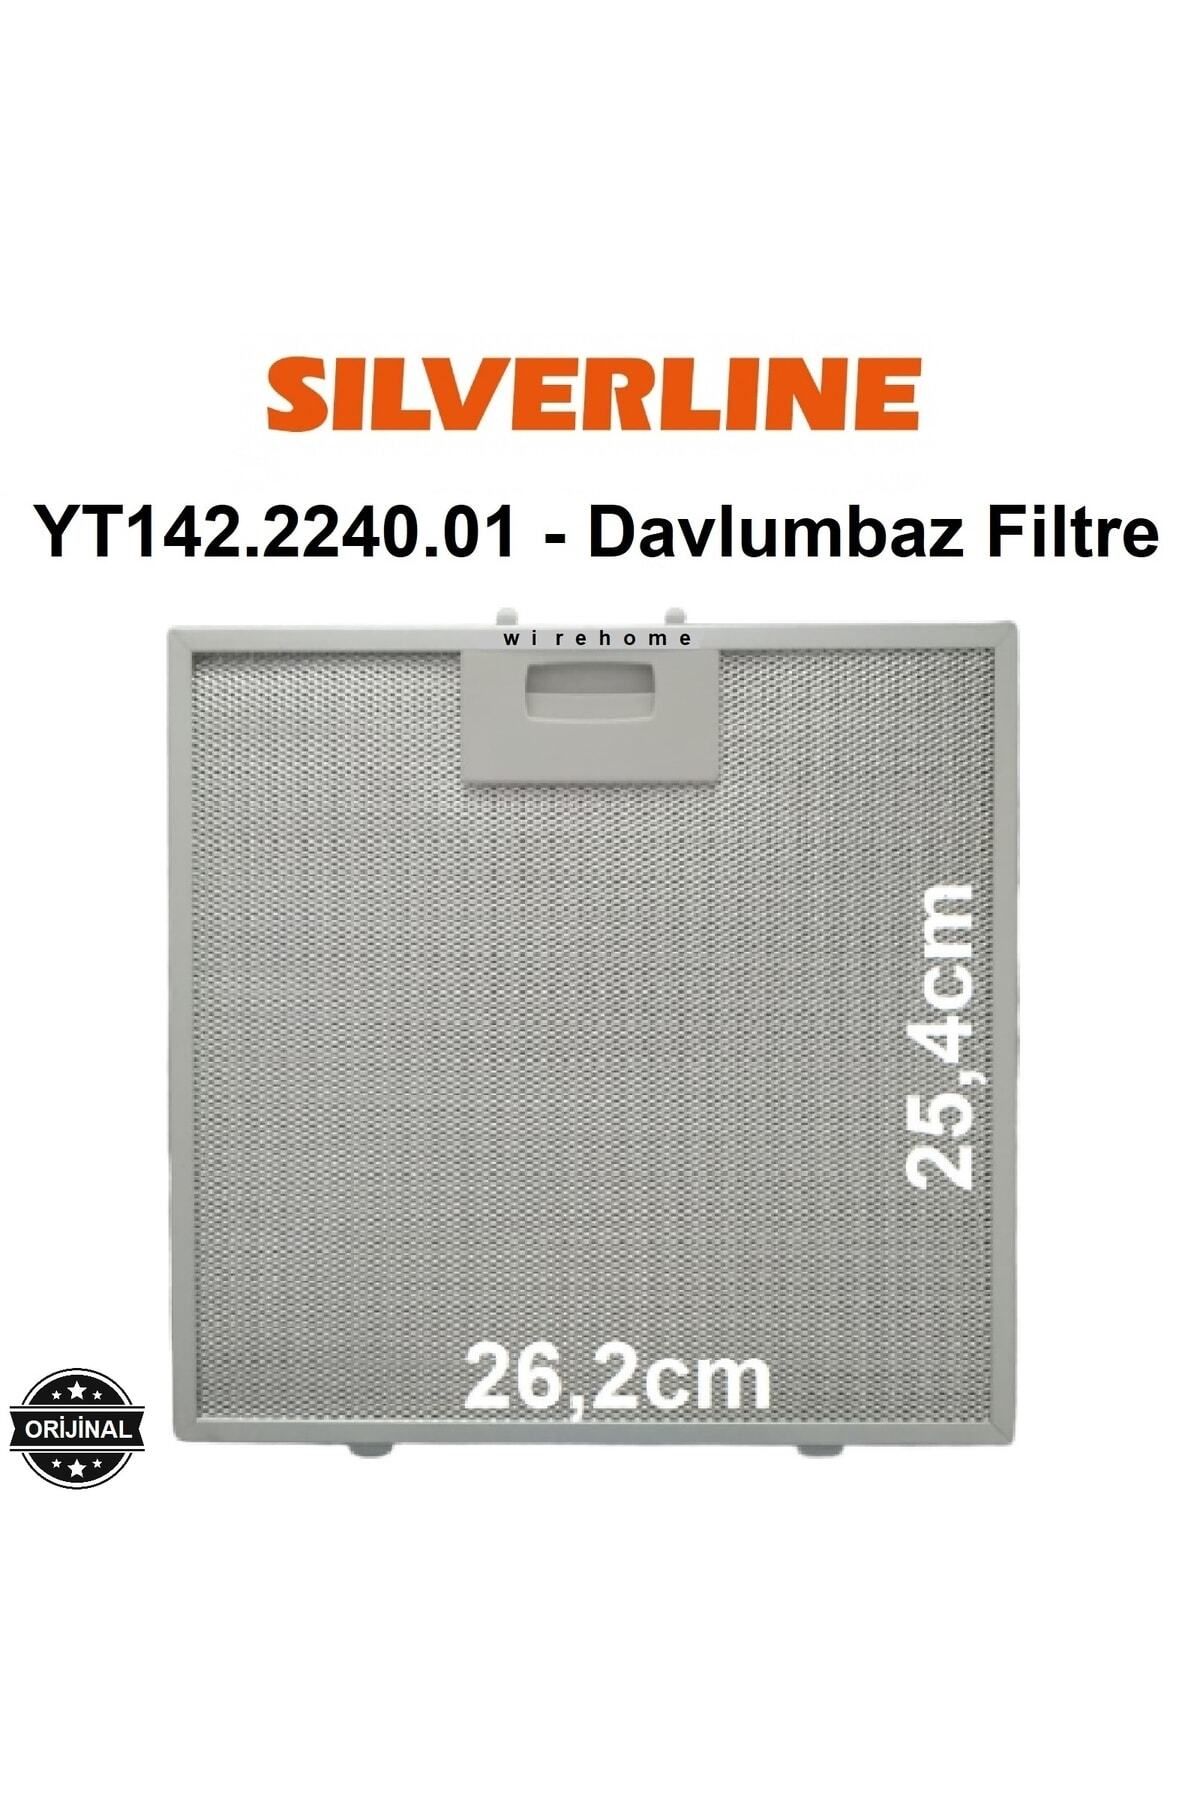 Silverline 2238 Bordo 2238.6.110.02 Davlumbaz Filtre Aspiratör Metal Süzgeç Alüminyum Yağ Filtresi